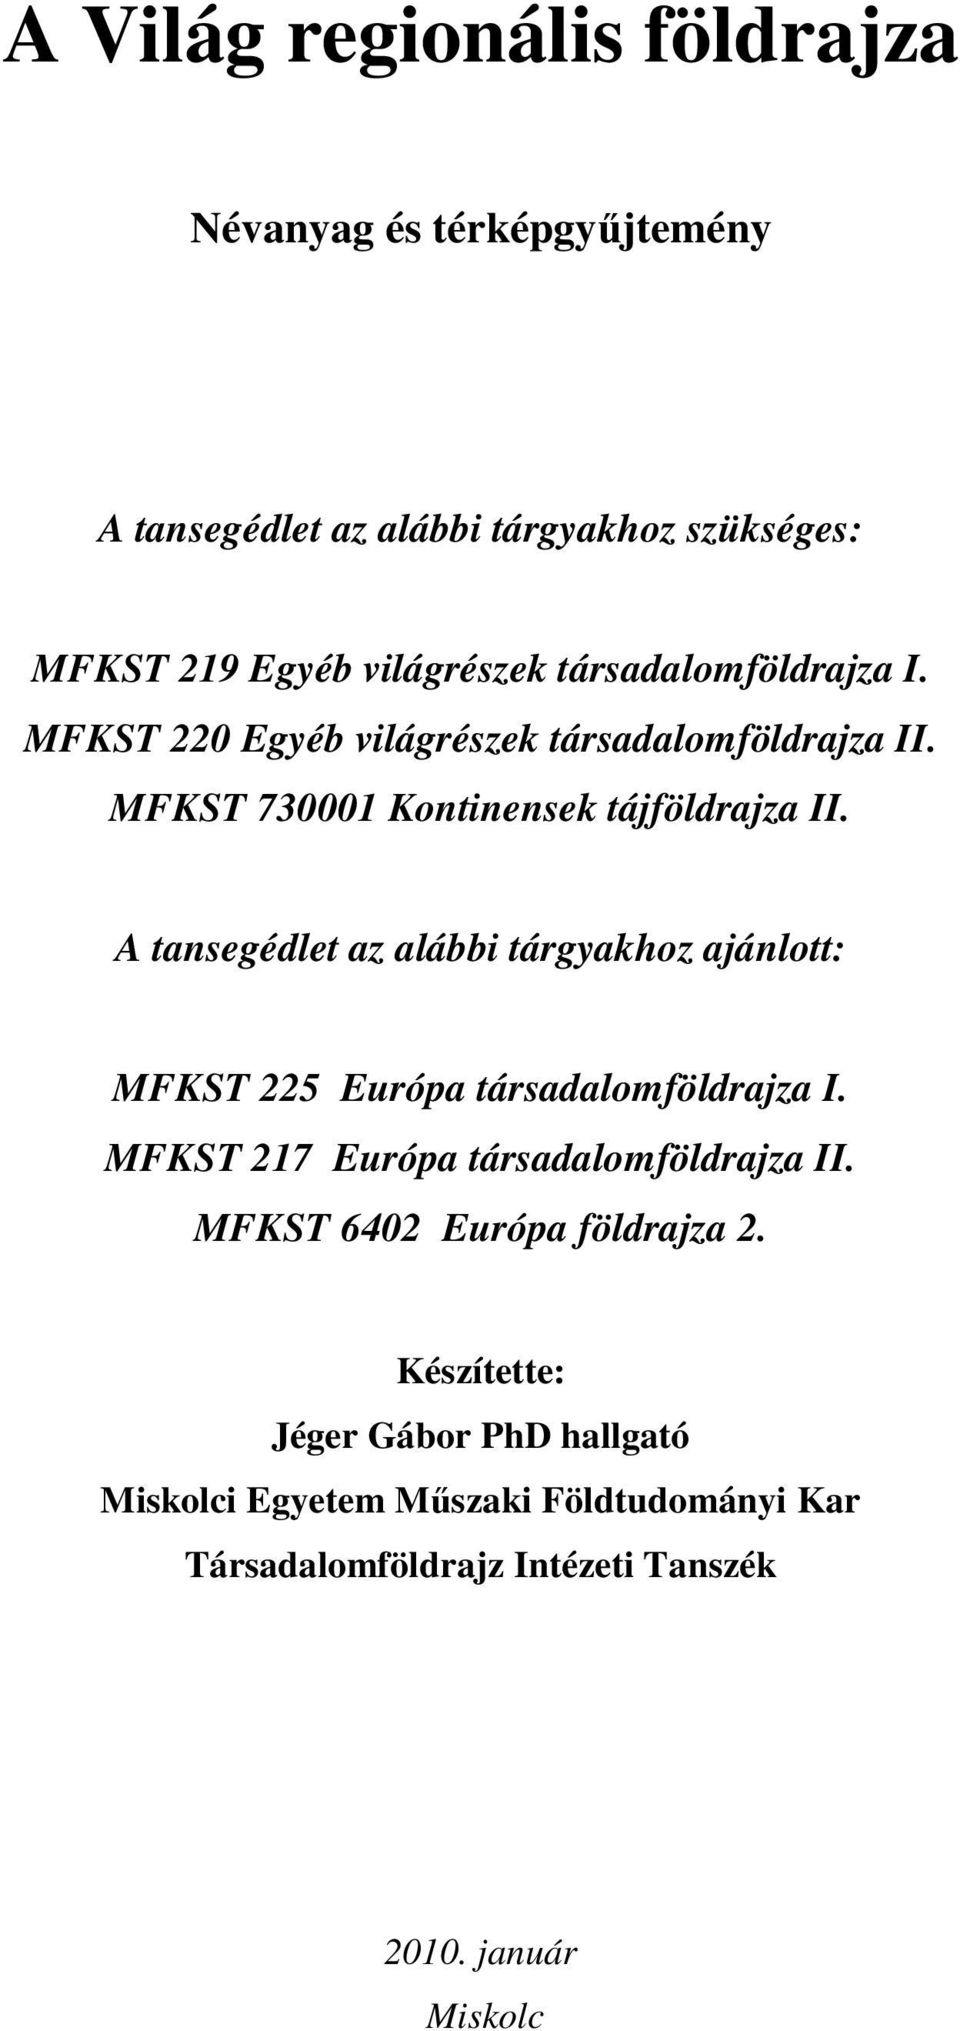 A tansegédlet az alábbi tárgyakhoz ajánlott: MFKST 225 Európa társadalomföldrajza I. MFKST 217 Európa társadalomföldrajza II.